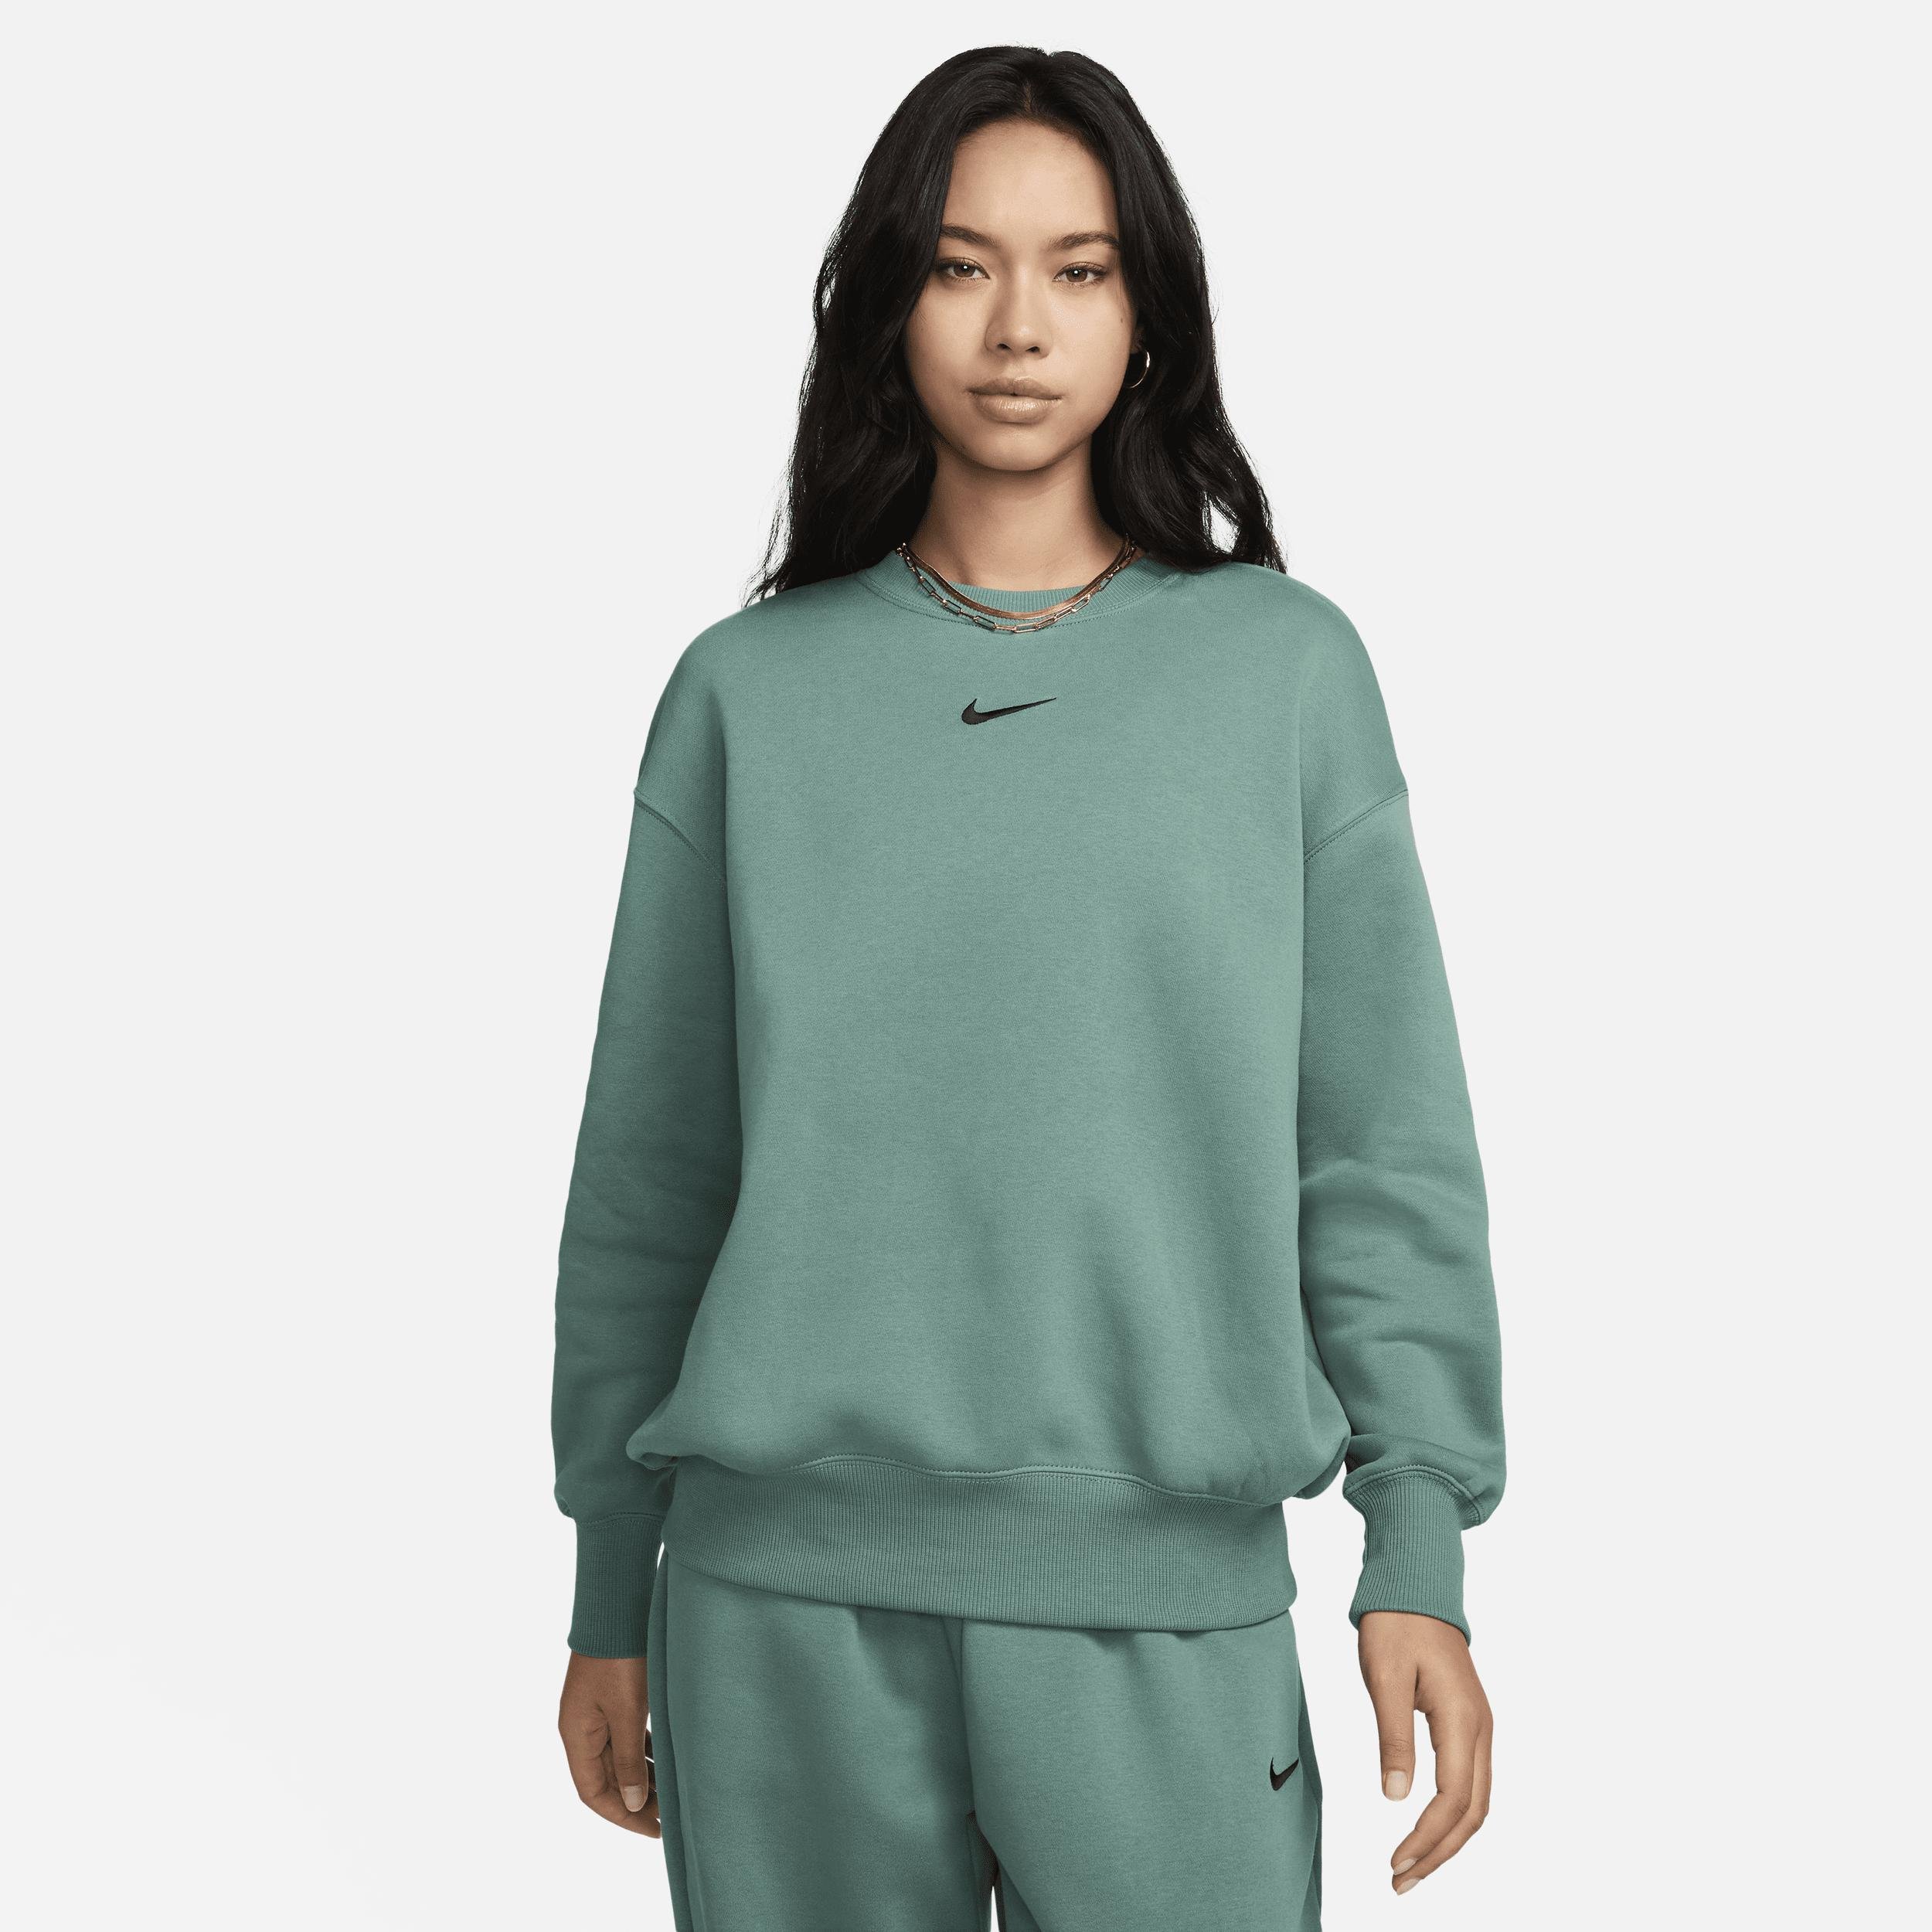 Women's Nike Sportswear Phoenix Fleece Oversized Crew-Neck Sweatshirt by NIKE